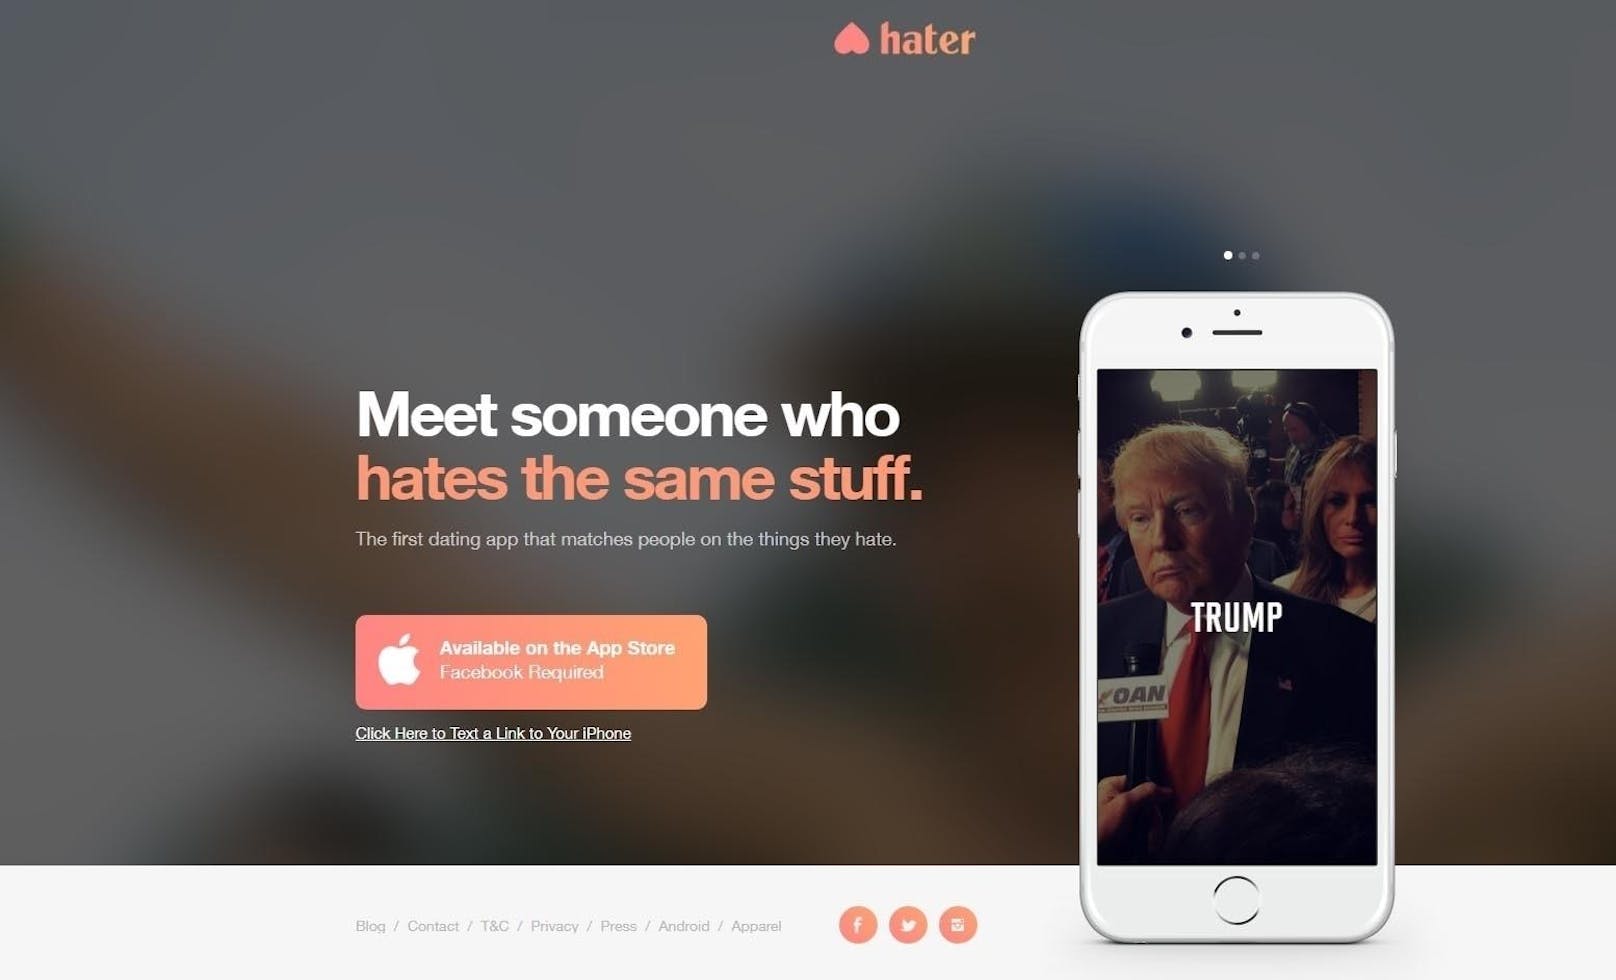 Weil gemeinsamer Hass die Liebe stärkt! Dating-App und Plattform die Menschen zusammenbringt, die dieselben Dinge hassen. <a href="https://www.haterdater.com/" target="_blank">haterdater.com</a>